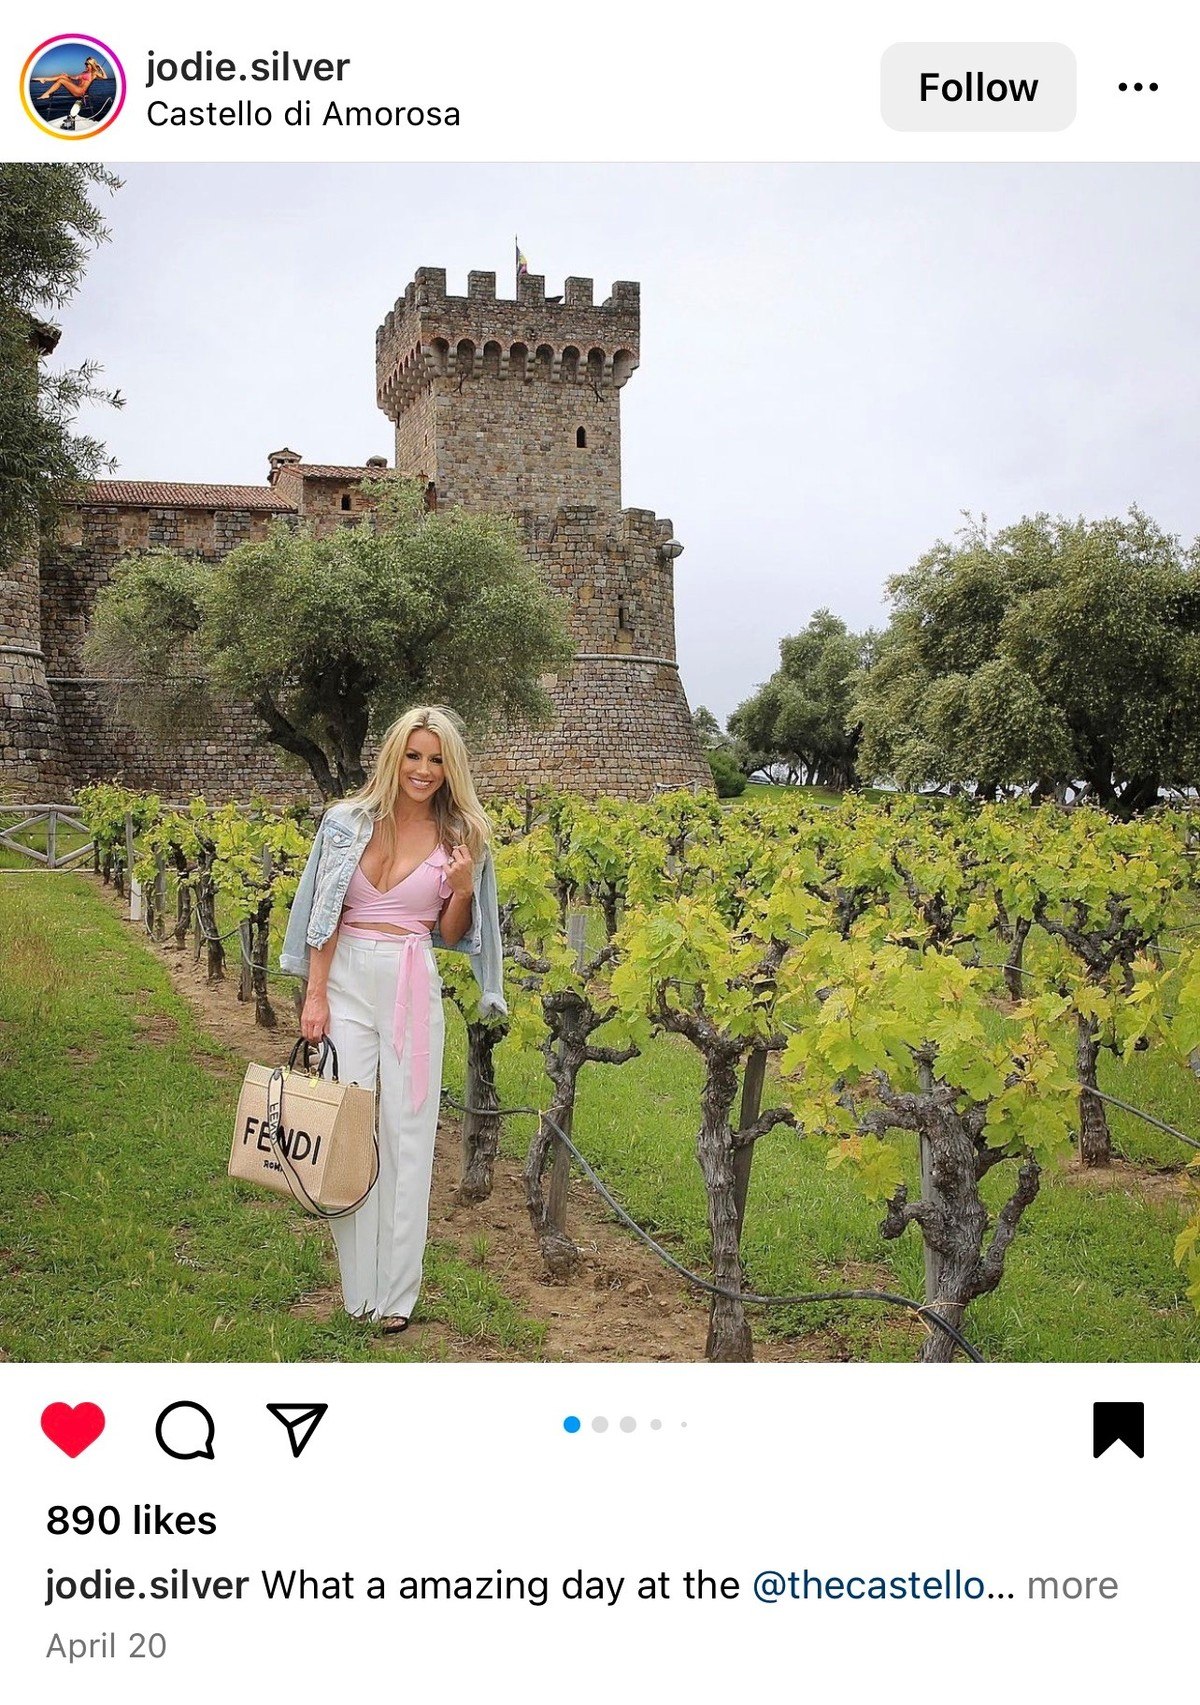 Castello di Amorosa visitors on Instagram.